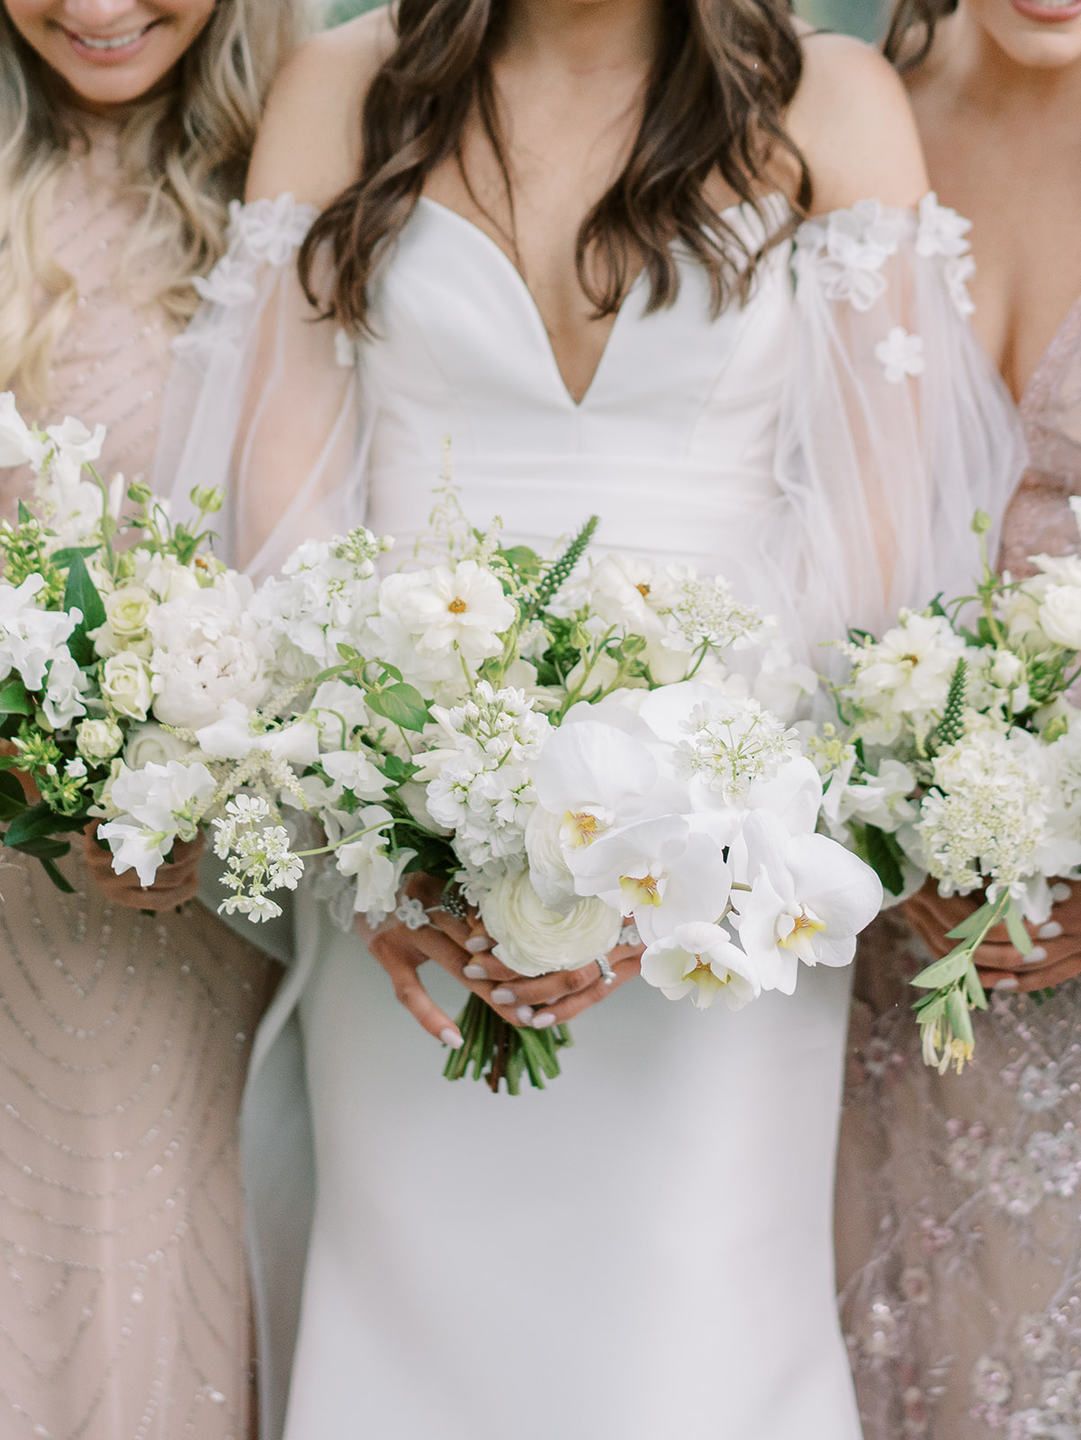 Beyond Roses and Peonies: Choosing Creative Wedding Florals